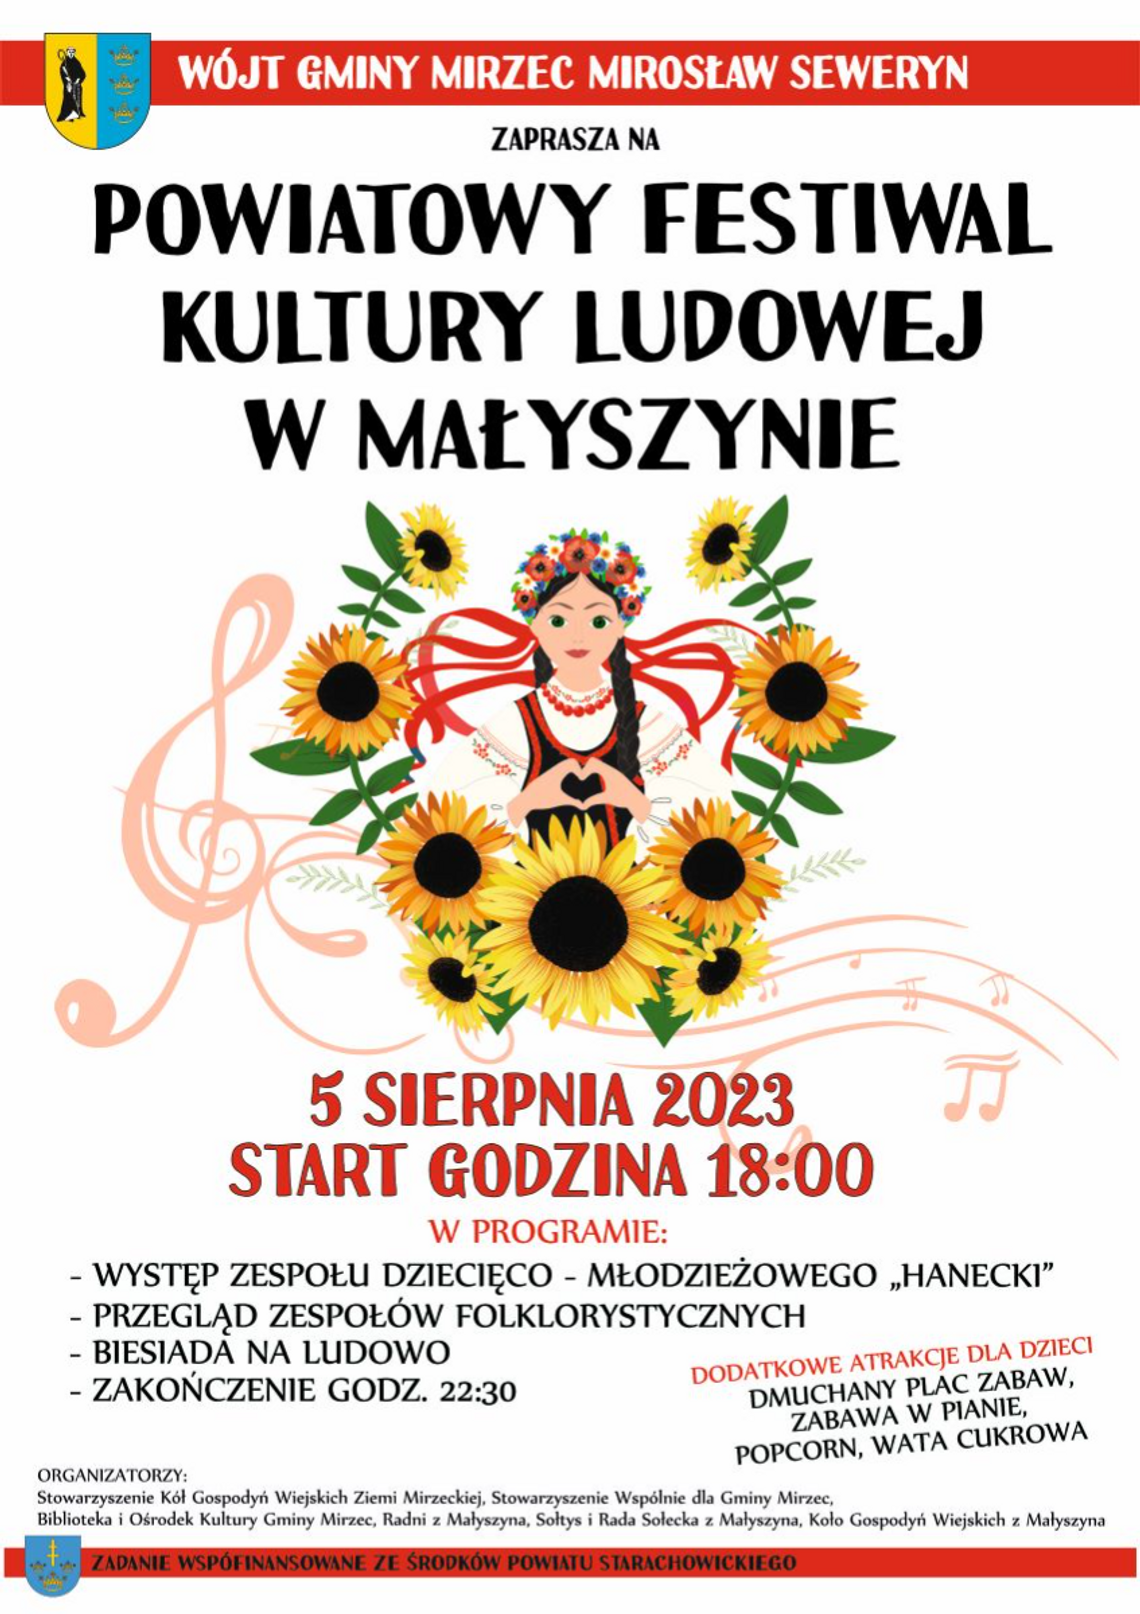 Przed nami Powiatowy Festiwal Kultury Ludowej w Małyszynie